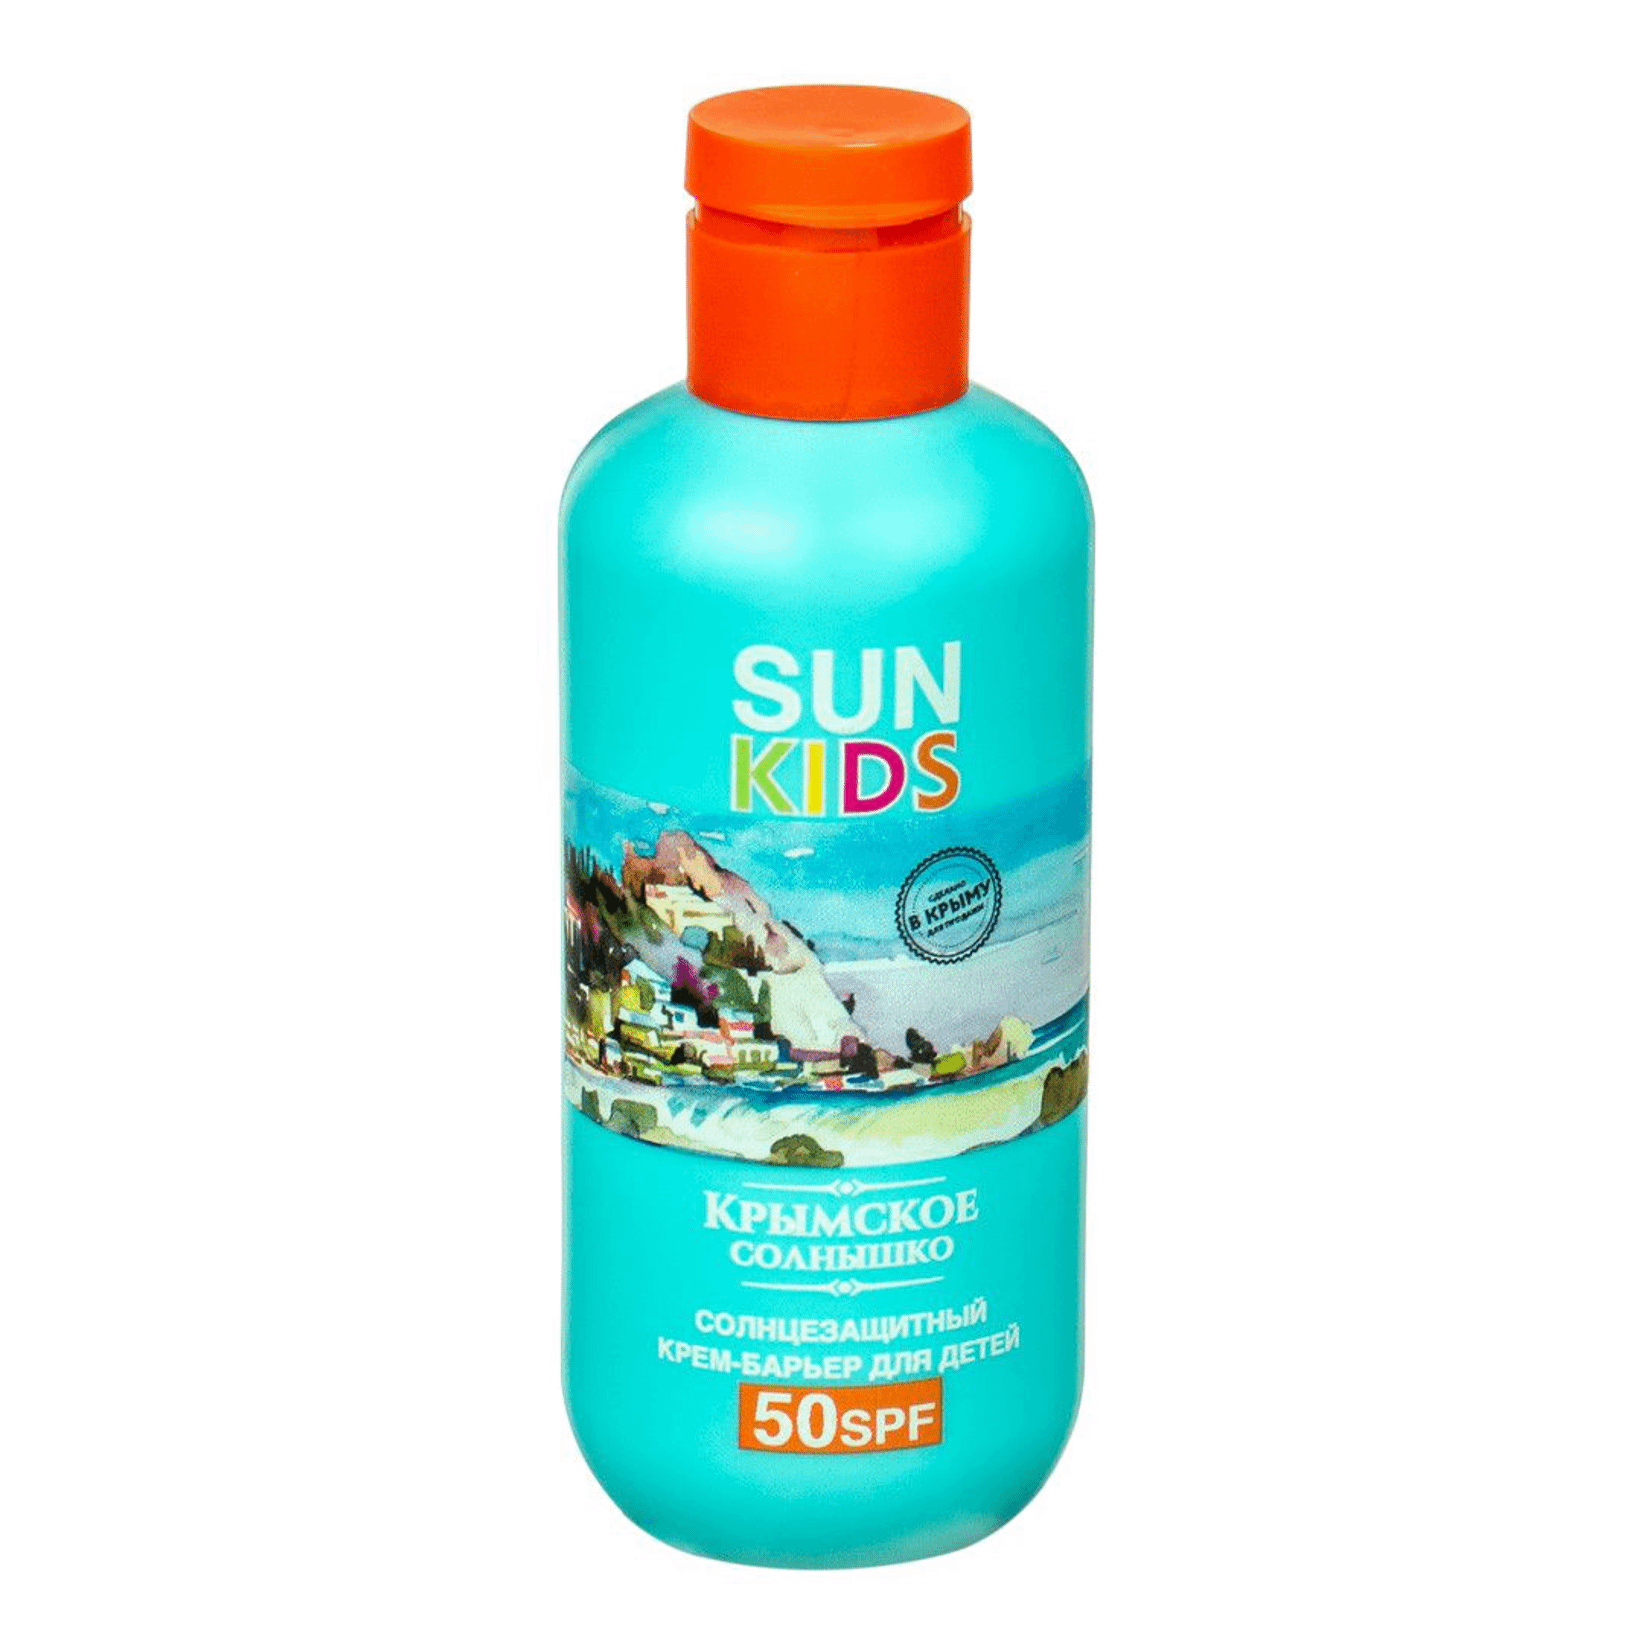 Солнцезащитный крем Крымская Ривьера Sun Kids для лица и тела 50 SPF 200 мл